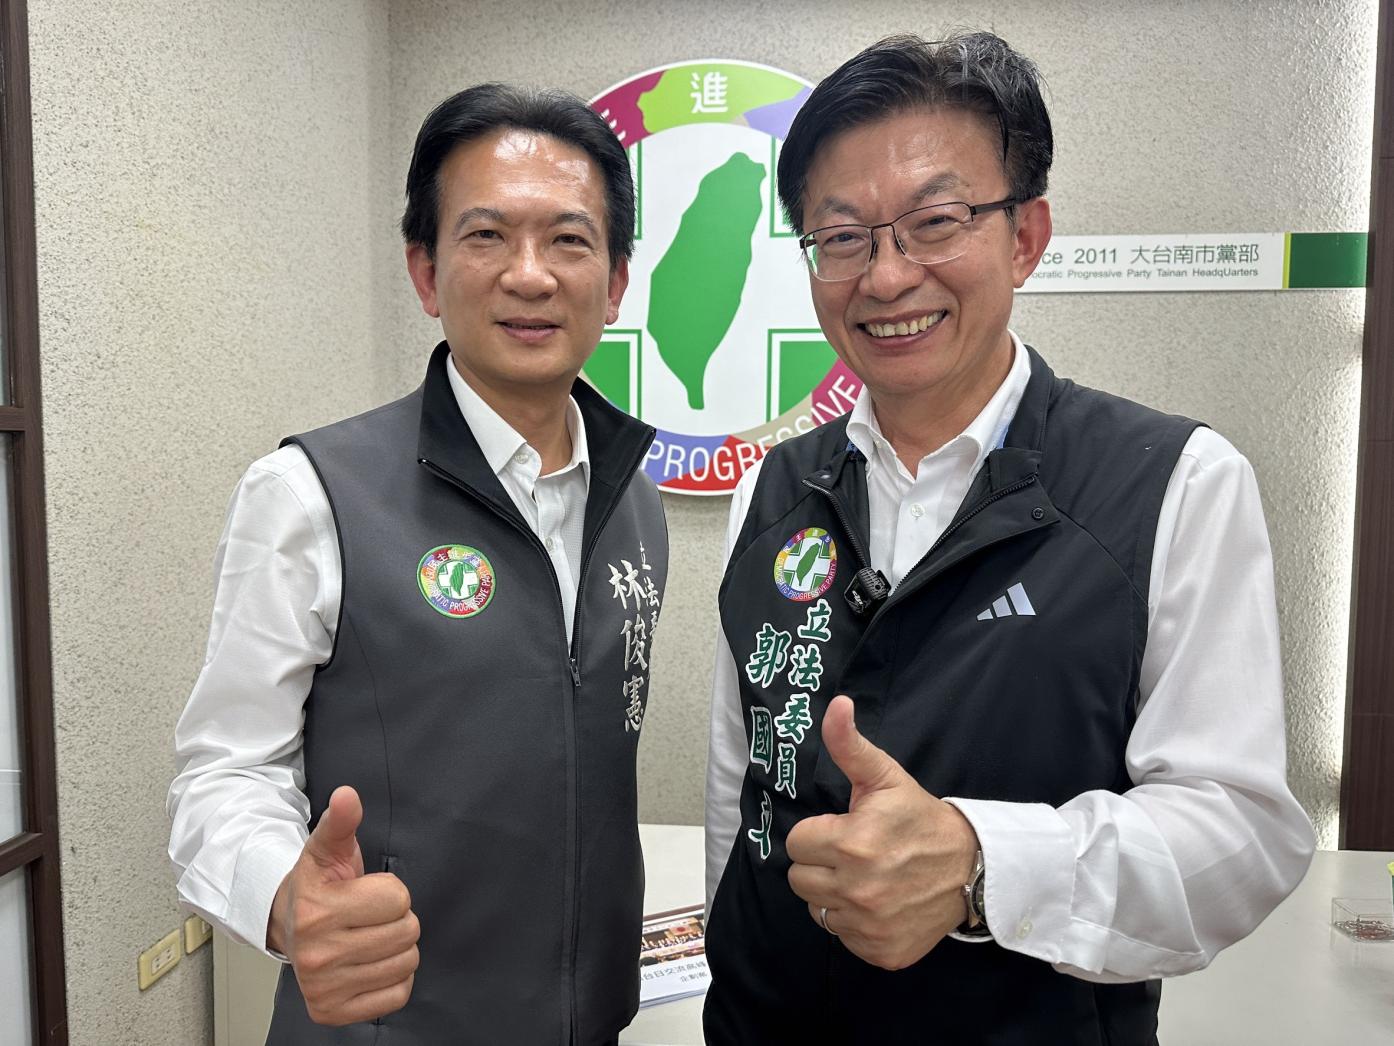 立委郭國文（右）參選台南市黨部主委，被視為立委林俊憲角逐市長初選的「造王者」。辛啓松攝